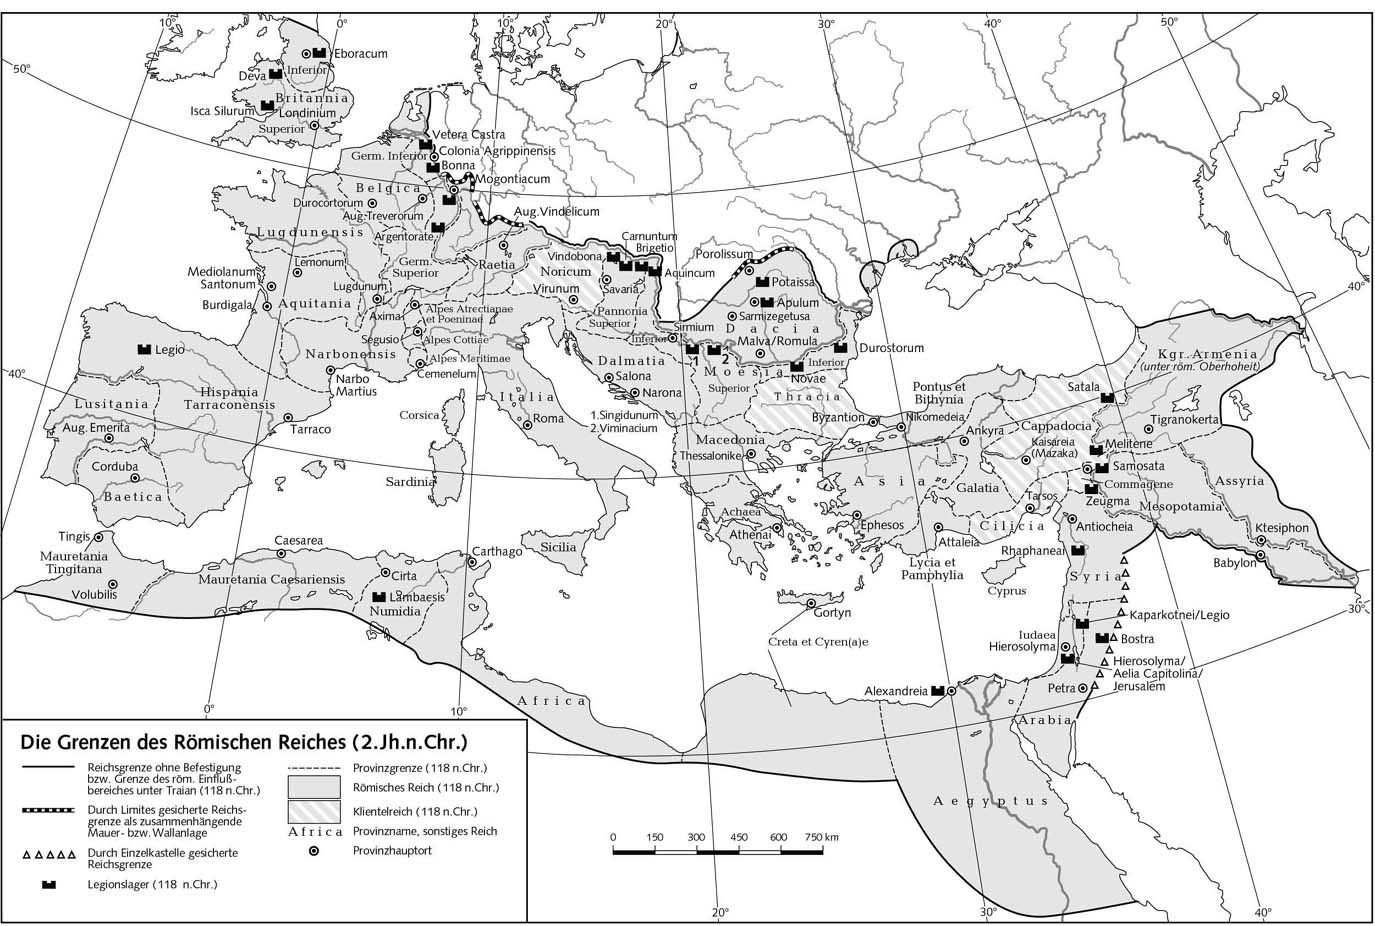 Границы римской империи (II в. н.э.) - Карта